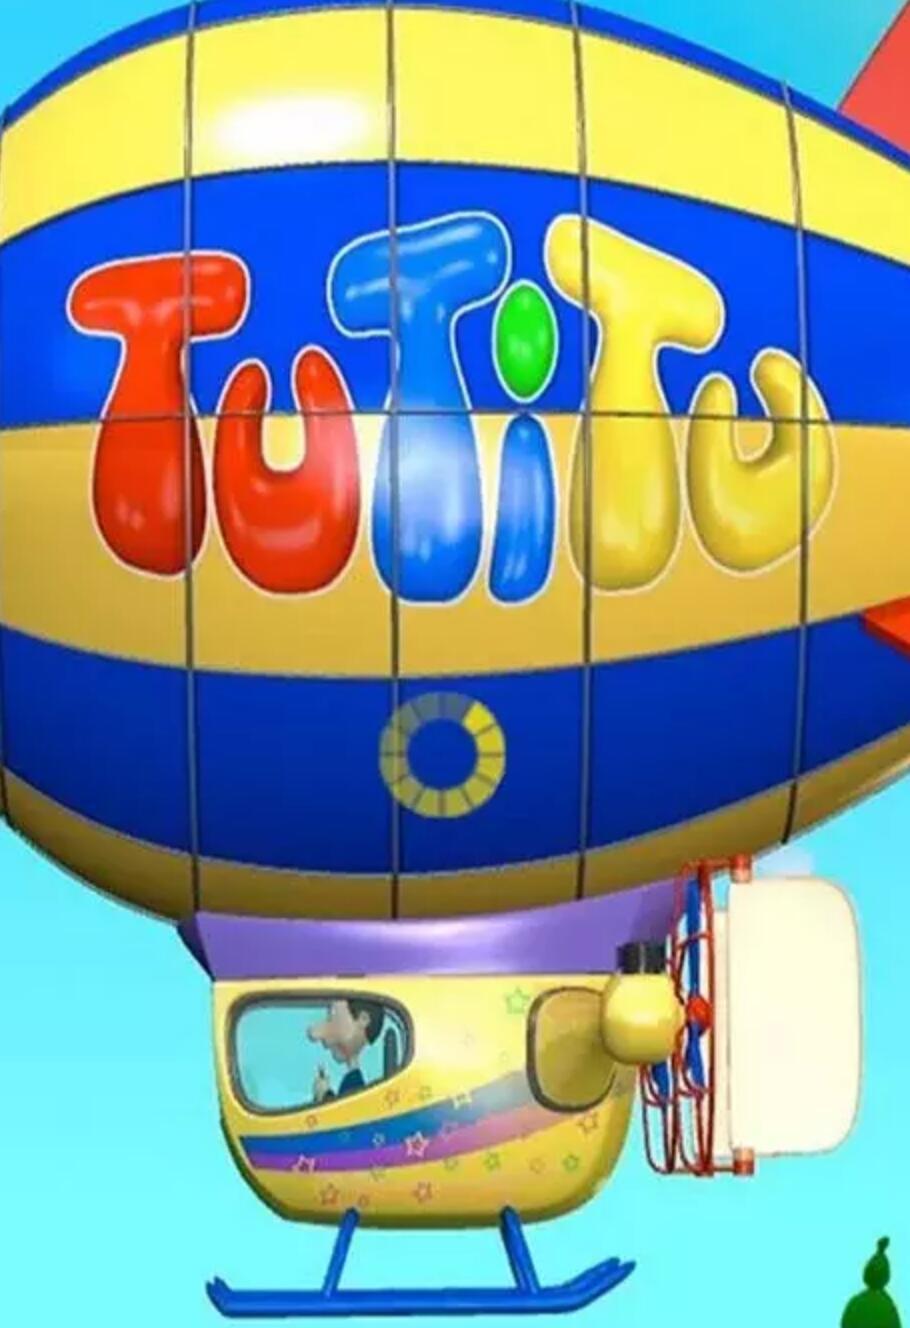 宝宝爱玩具TuTiTu 国产无对白益智动画片全49集下载 高清mp4 适合2-3岁宝宝4K|1080P高清百度网盘